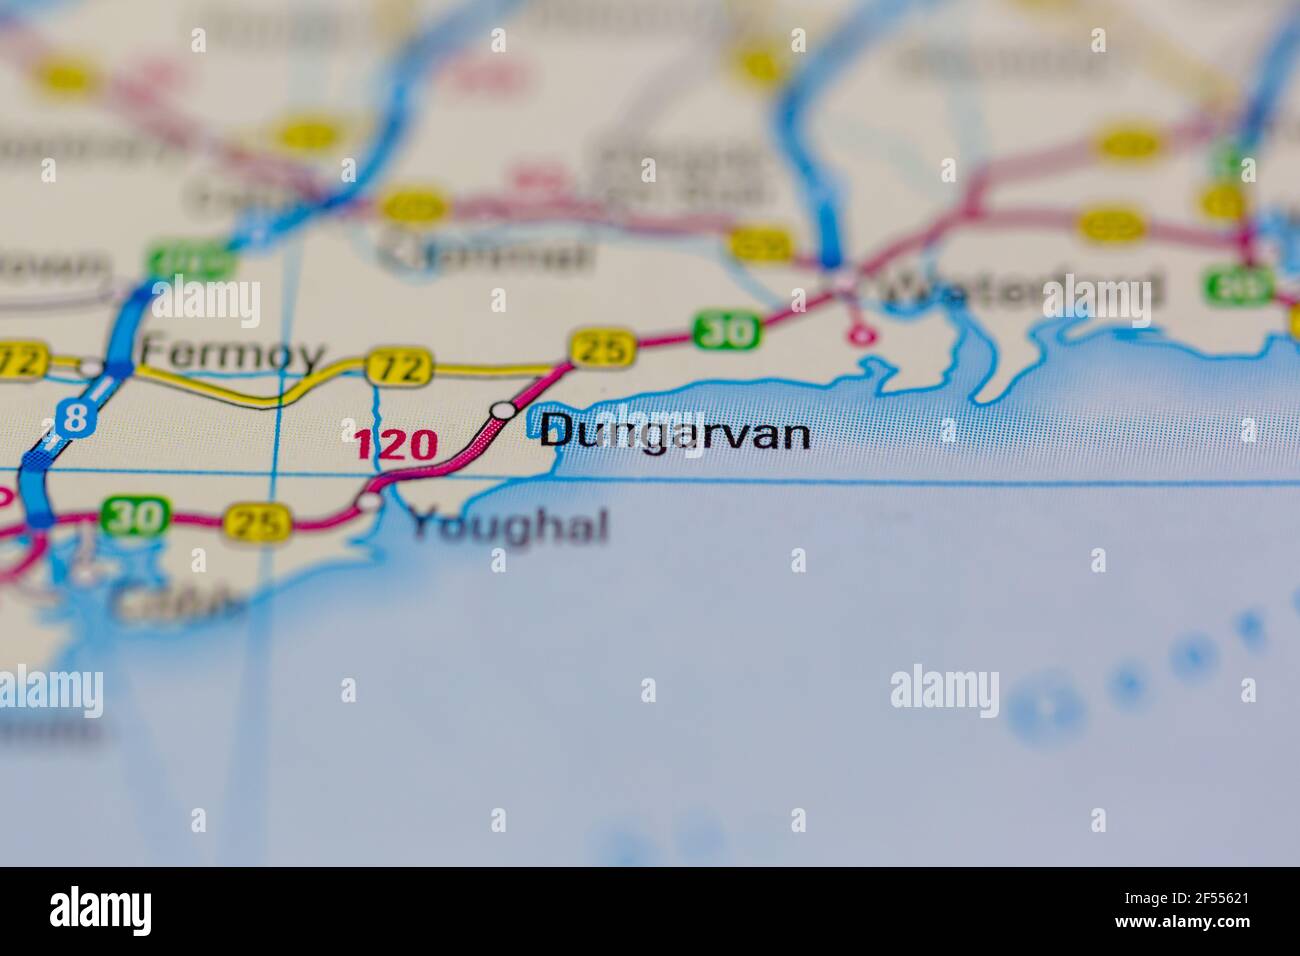 Dungarvan wird auf einer Geografie- oder Straßenkarte angezeigt Stockfoto